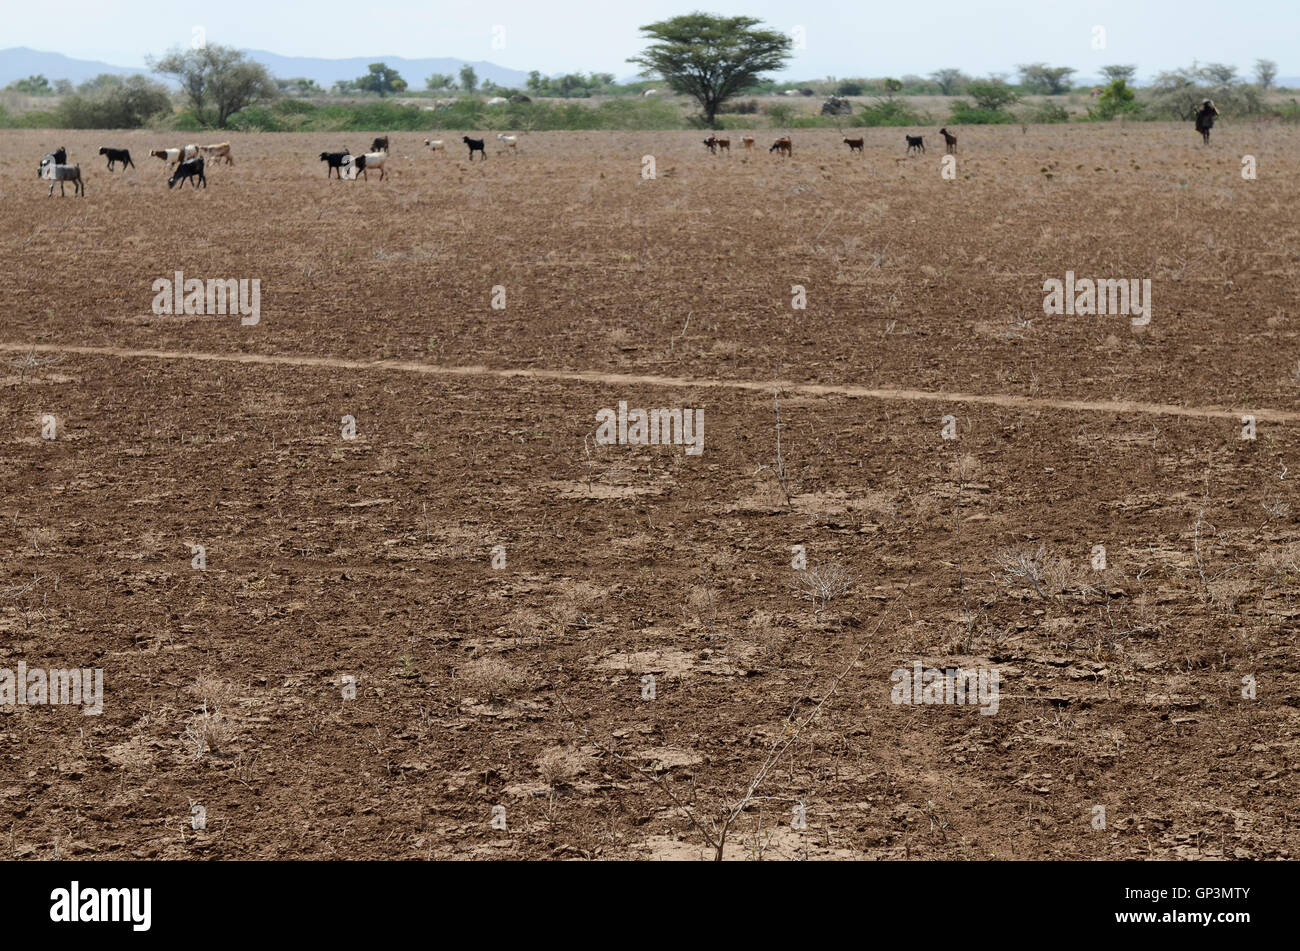 KENYA région Turkana, Kakuma , Turkana tribu nilotique, la région souffre de problèmes permanents de sécheresse, de manque de pluie, de surpâturage Banque D'Images